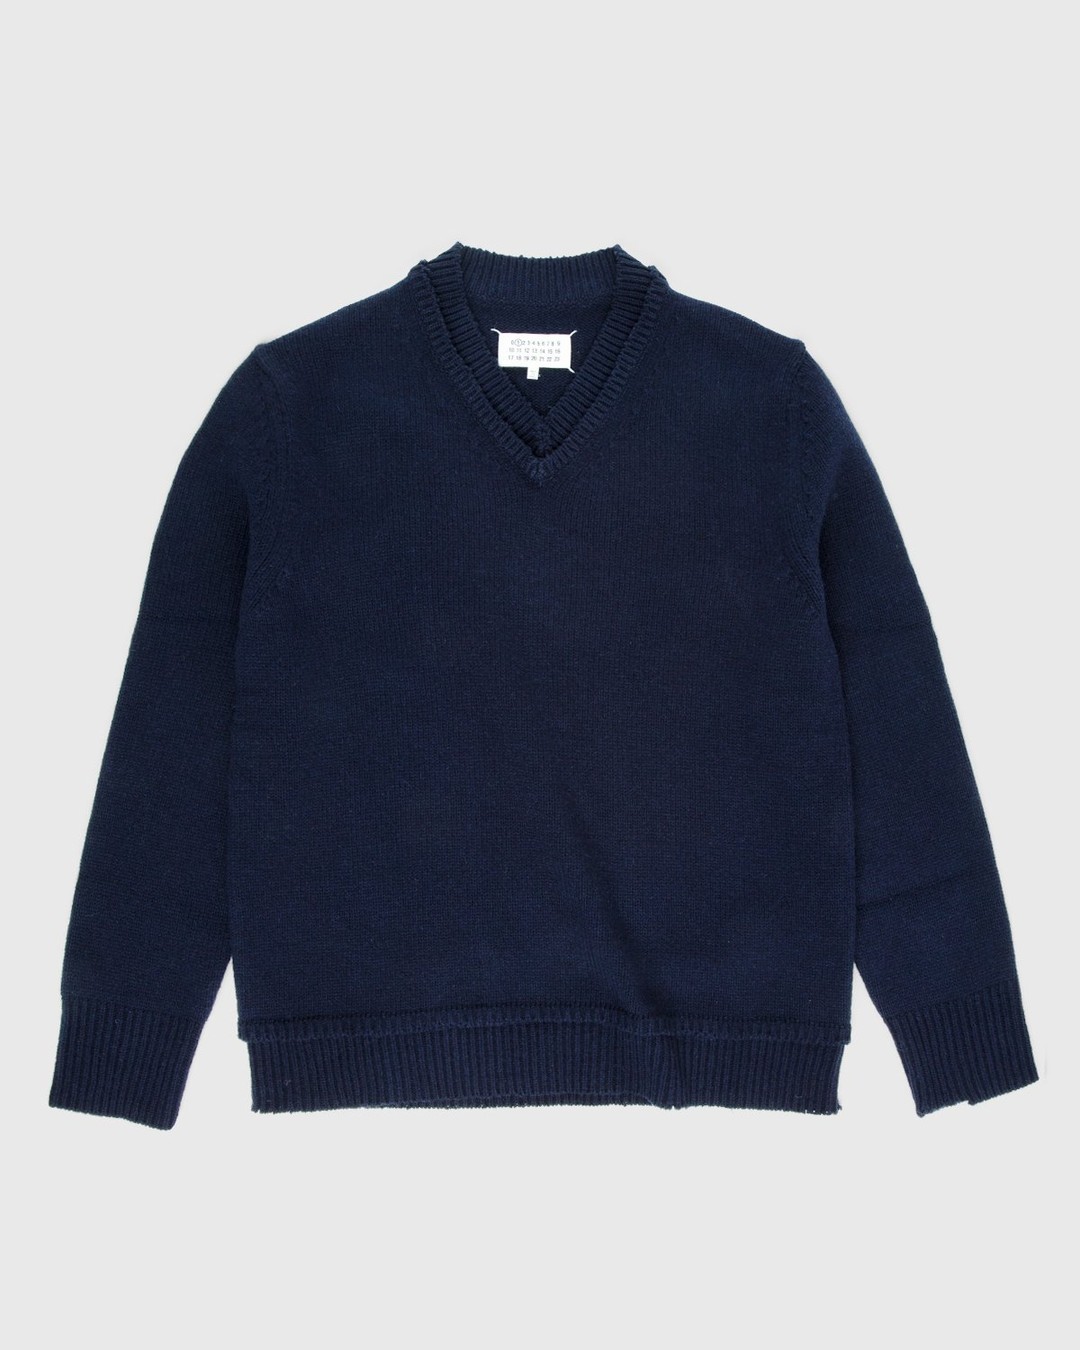 Maison Margiela – Sweater Navy - Knitwear - Blue - Image 1